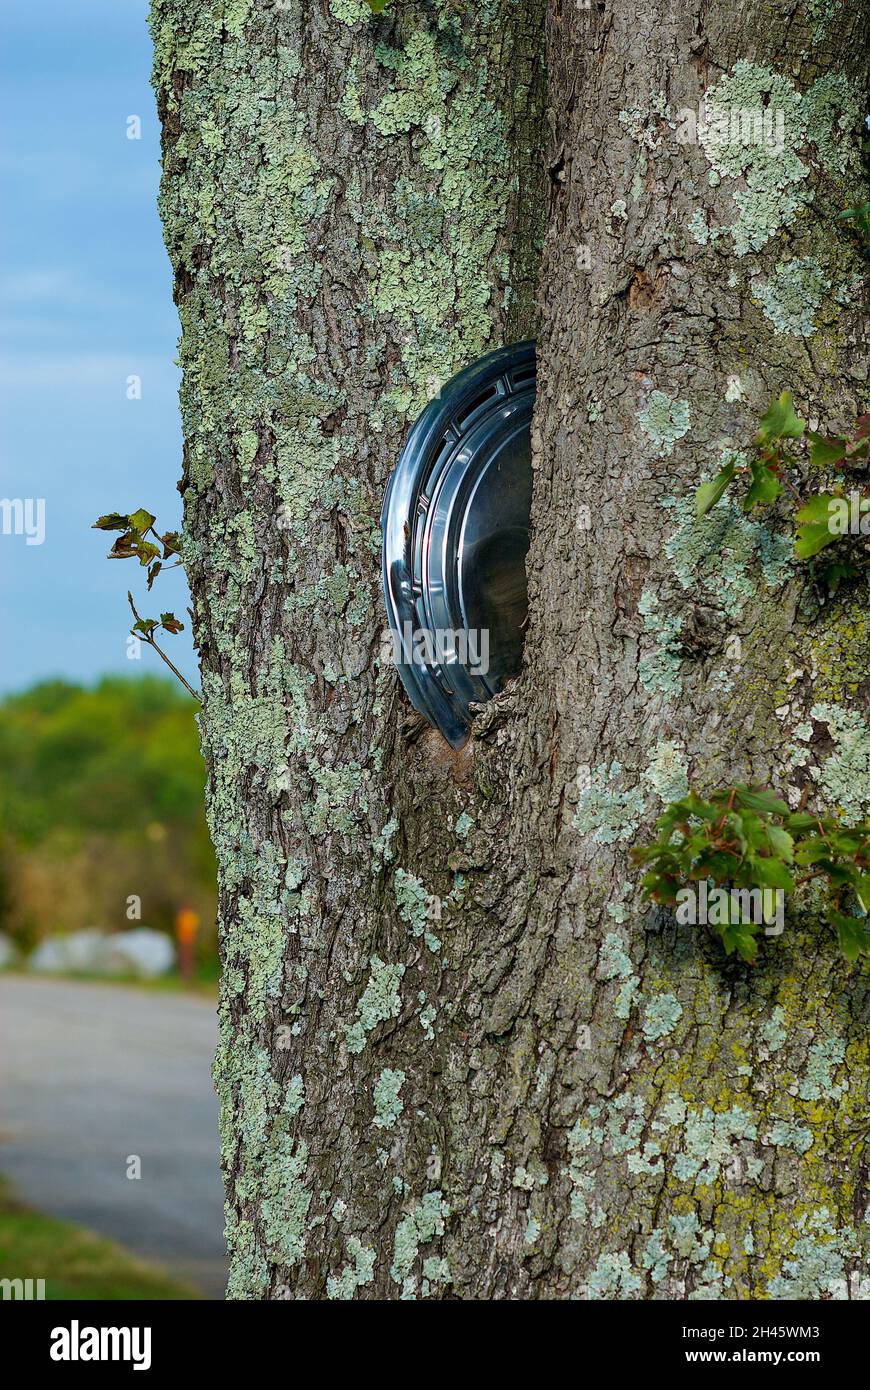 Die Metallkappe eines alten Autoreifens ist in die Gabel eines reifen Baumes eingebettet, der um ihn herum aufgewachsen ist. Stockfoto